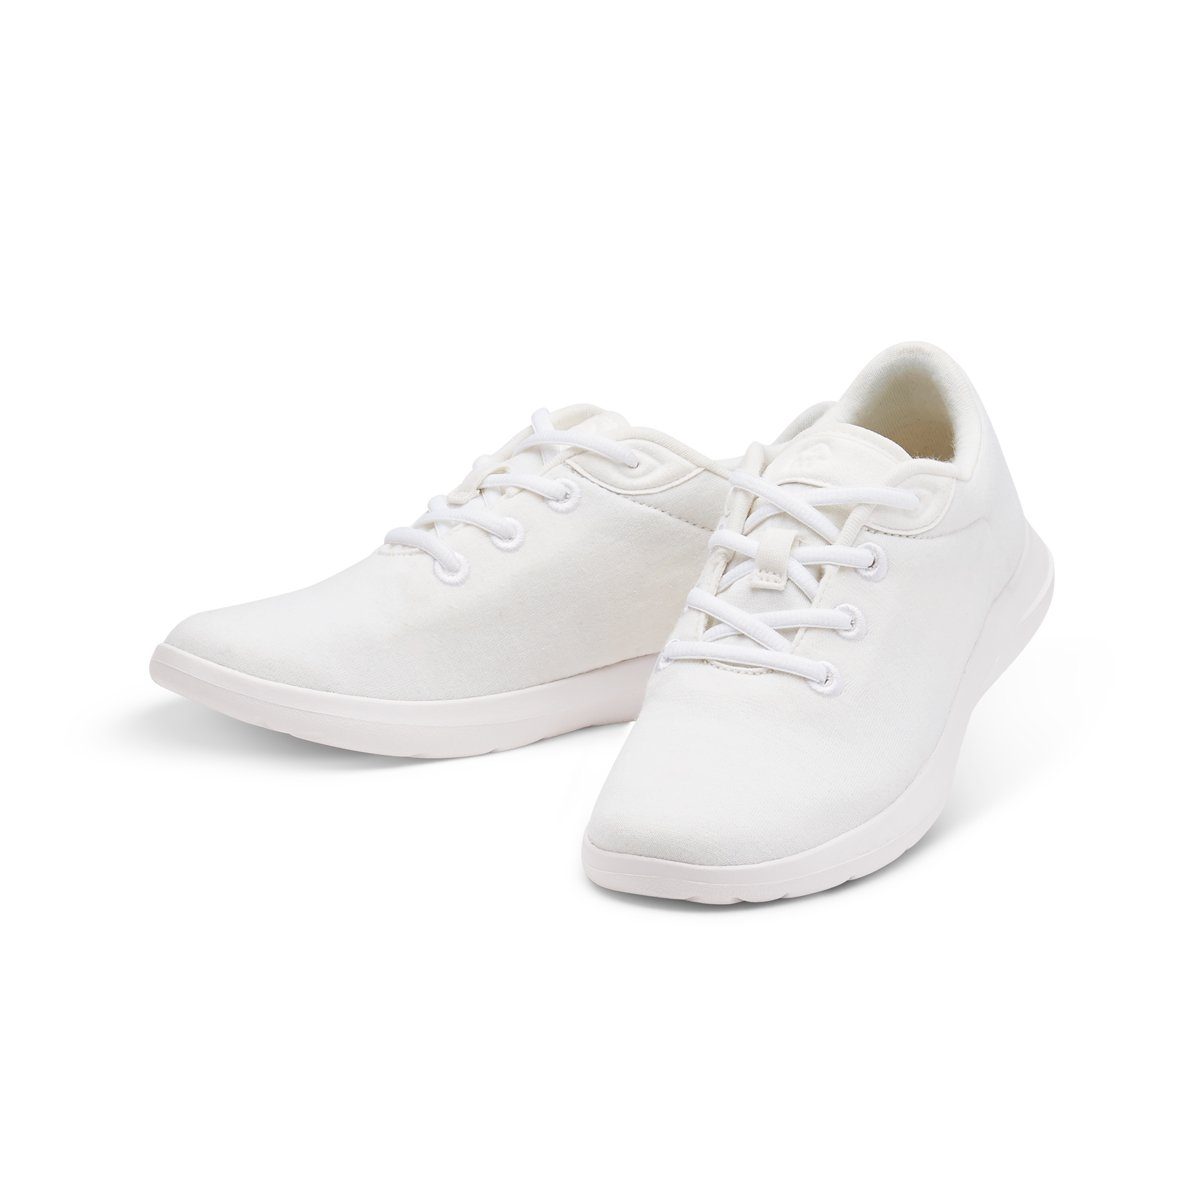 merinos - merinoshoes.de Bequeme Damen Lace- Up, Sportschuhe Sneaker atmungsaktive weiße Schuhe aus weicher Merinowolle